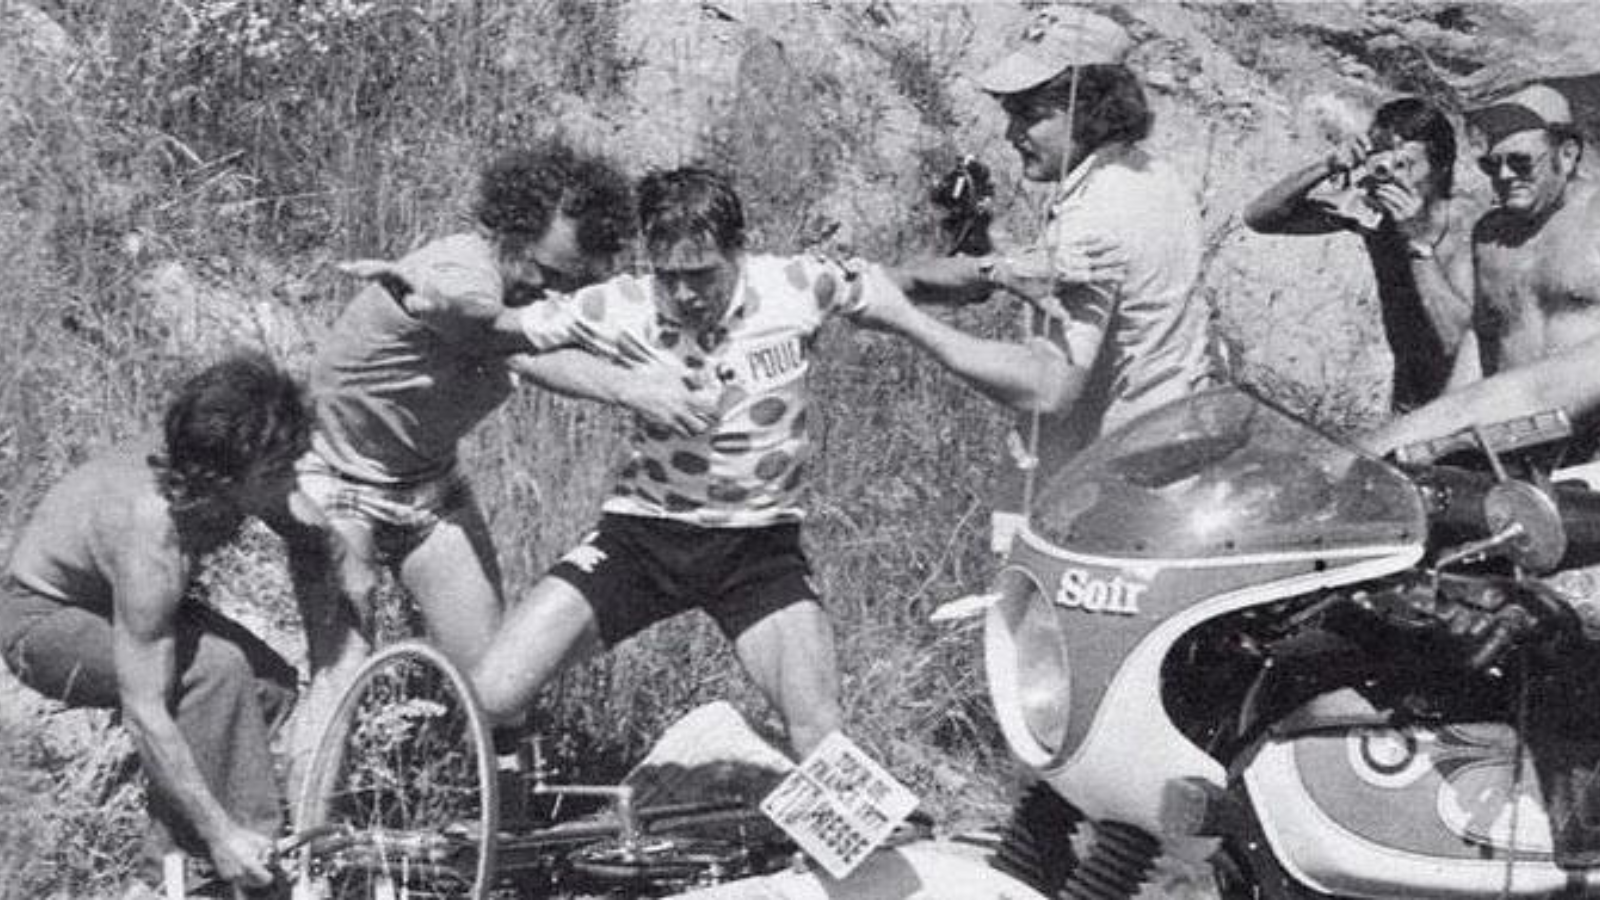 19 July 1977 Lucien Van Impe 's crash on Alpe d'Huez - PelotonTales